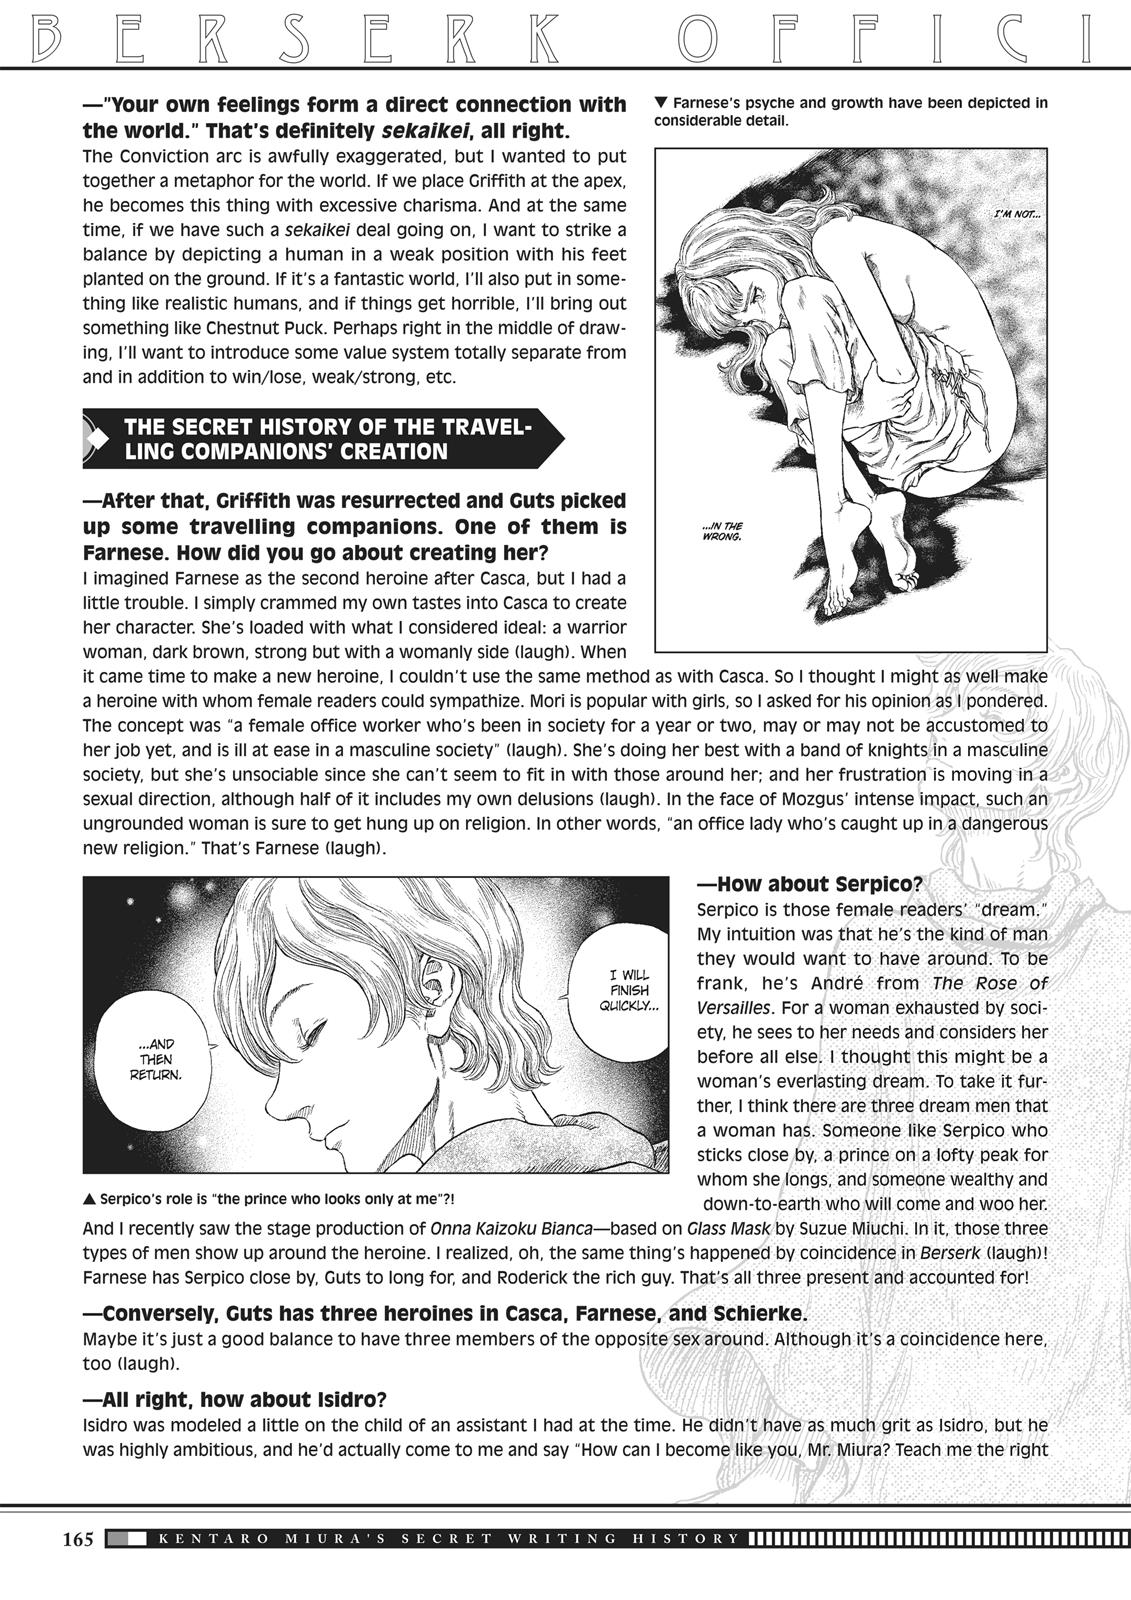 Berserk Manga Chapter 350.5 image 162